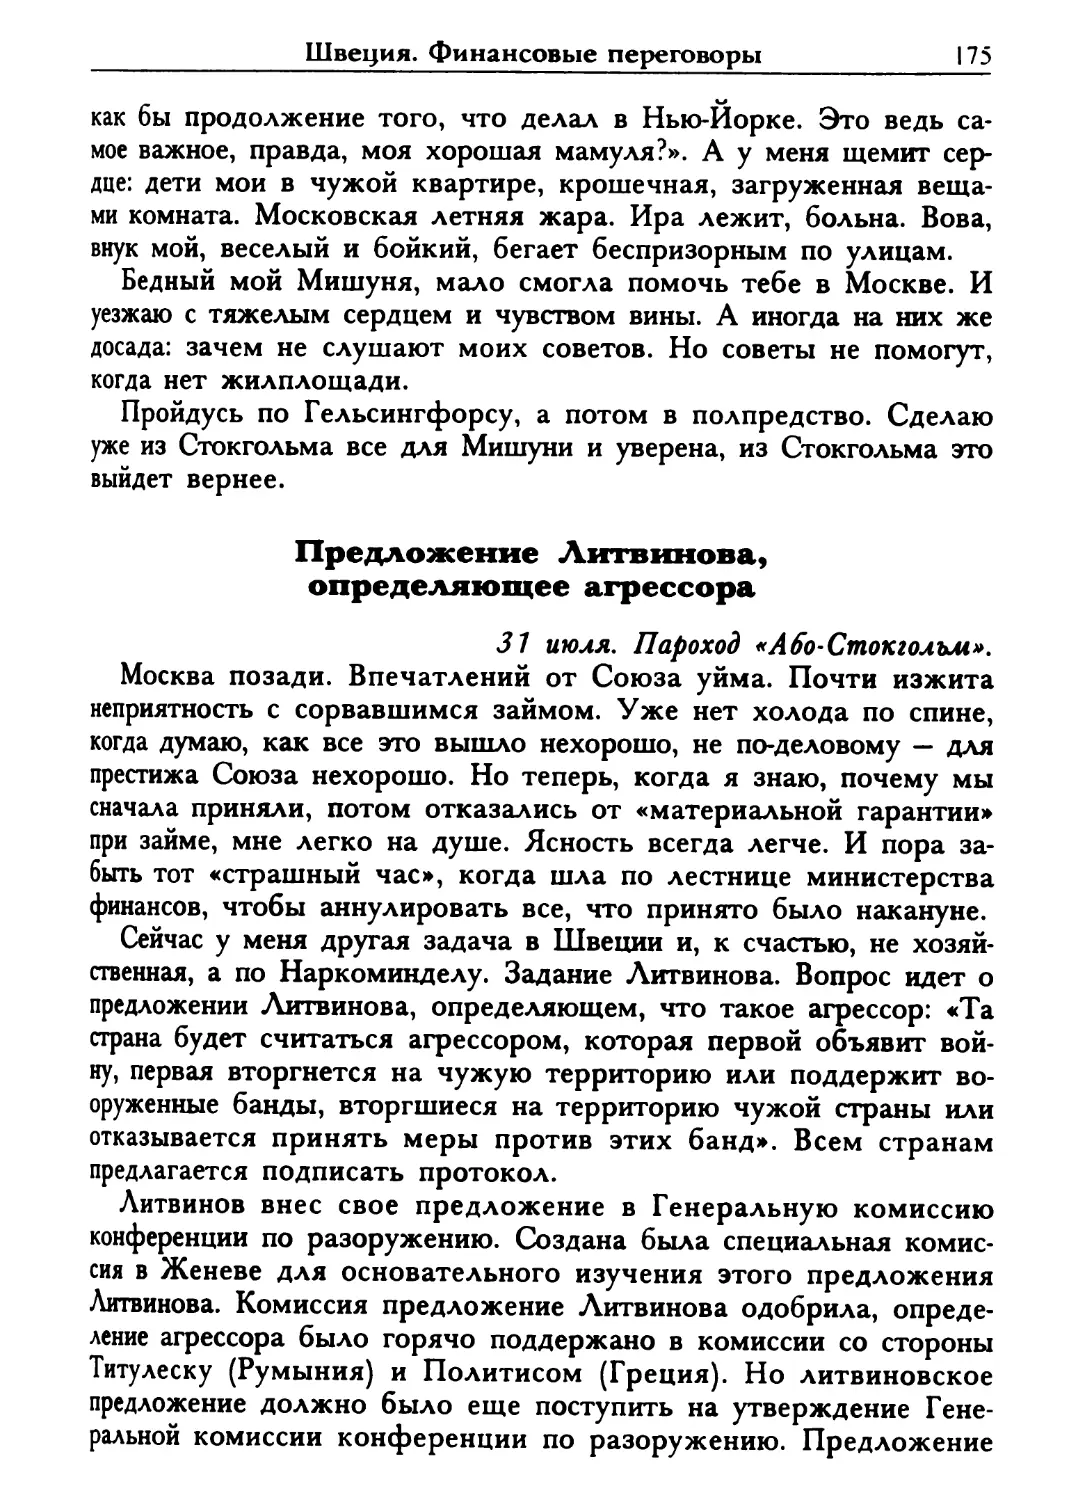 Предложение Литвинова, определяющее агрессора